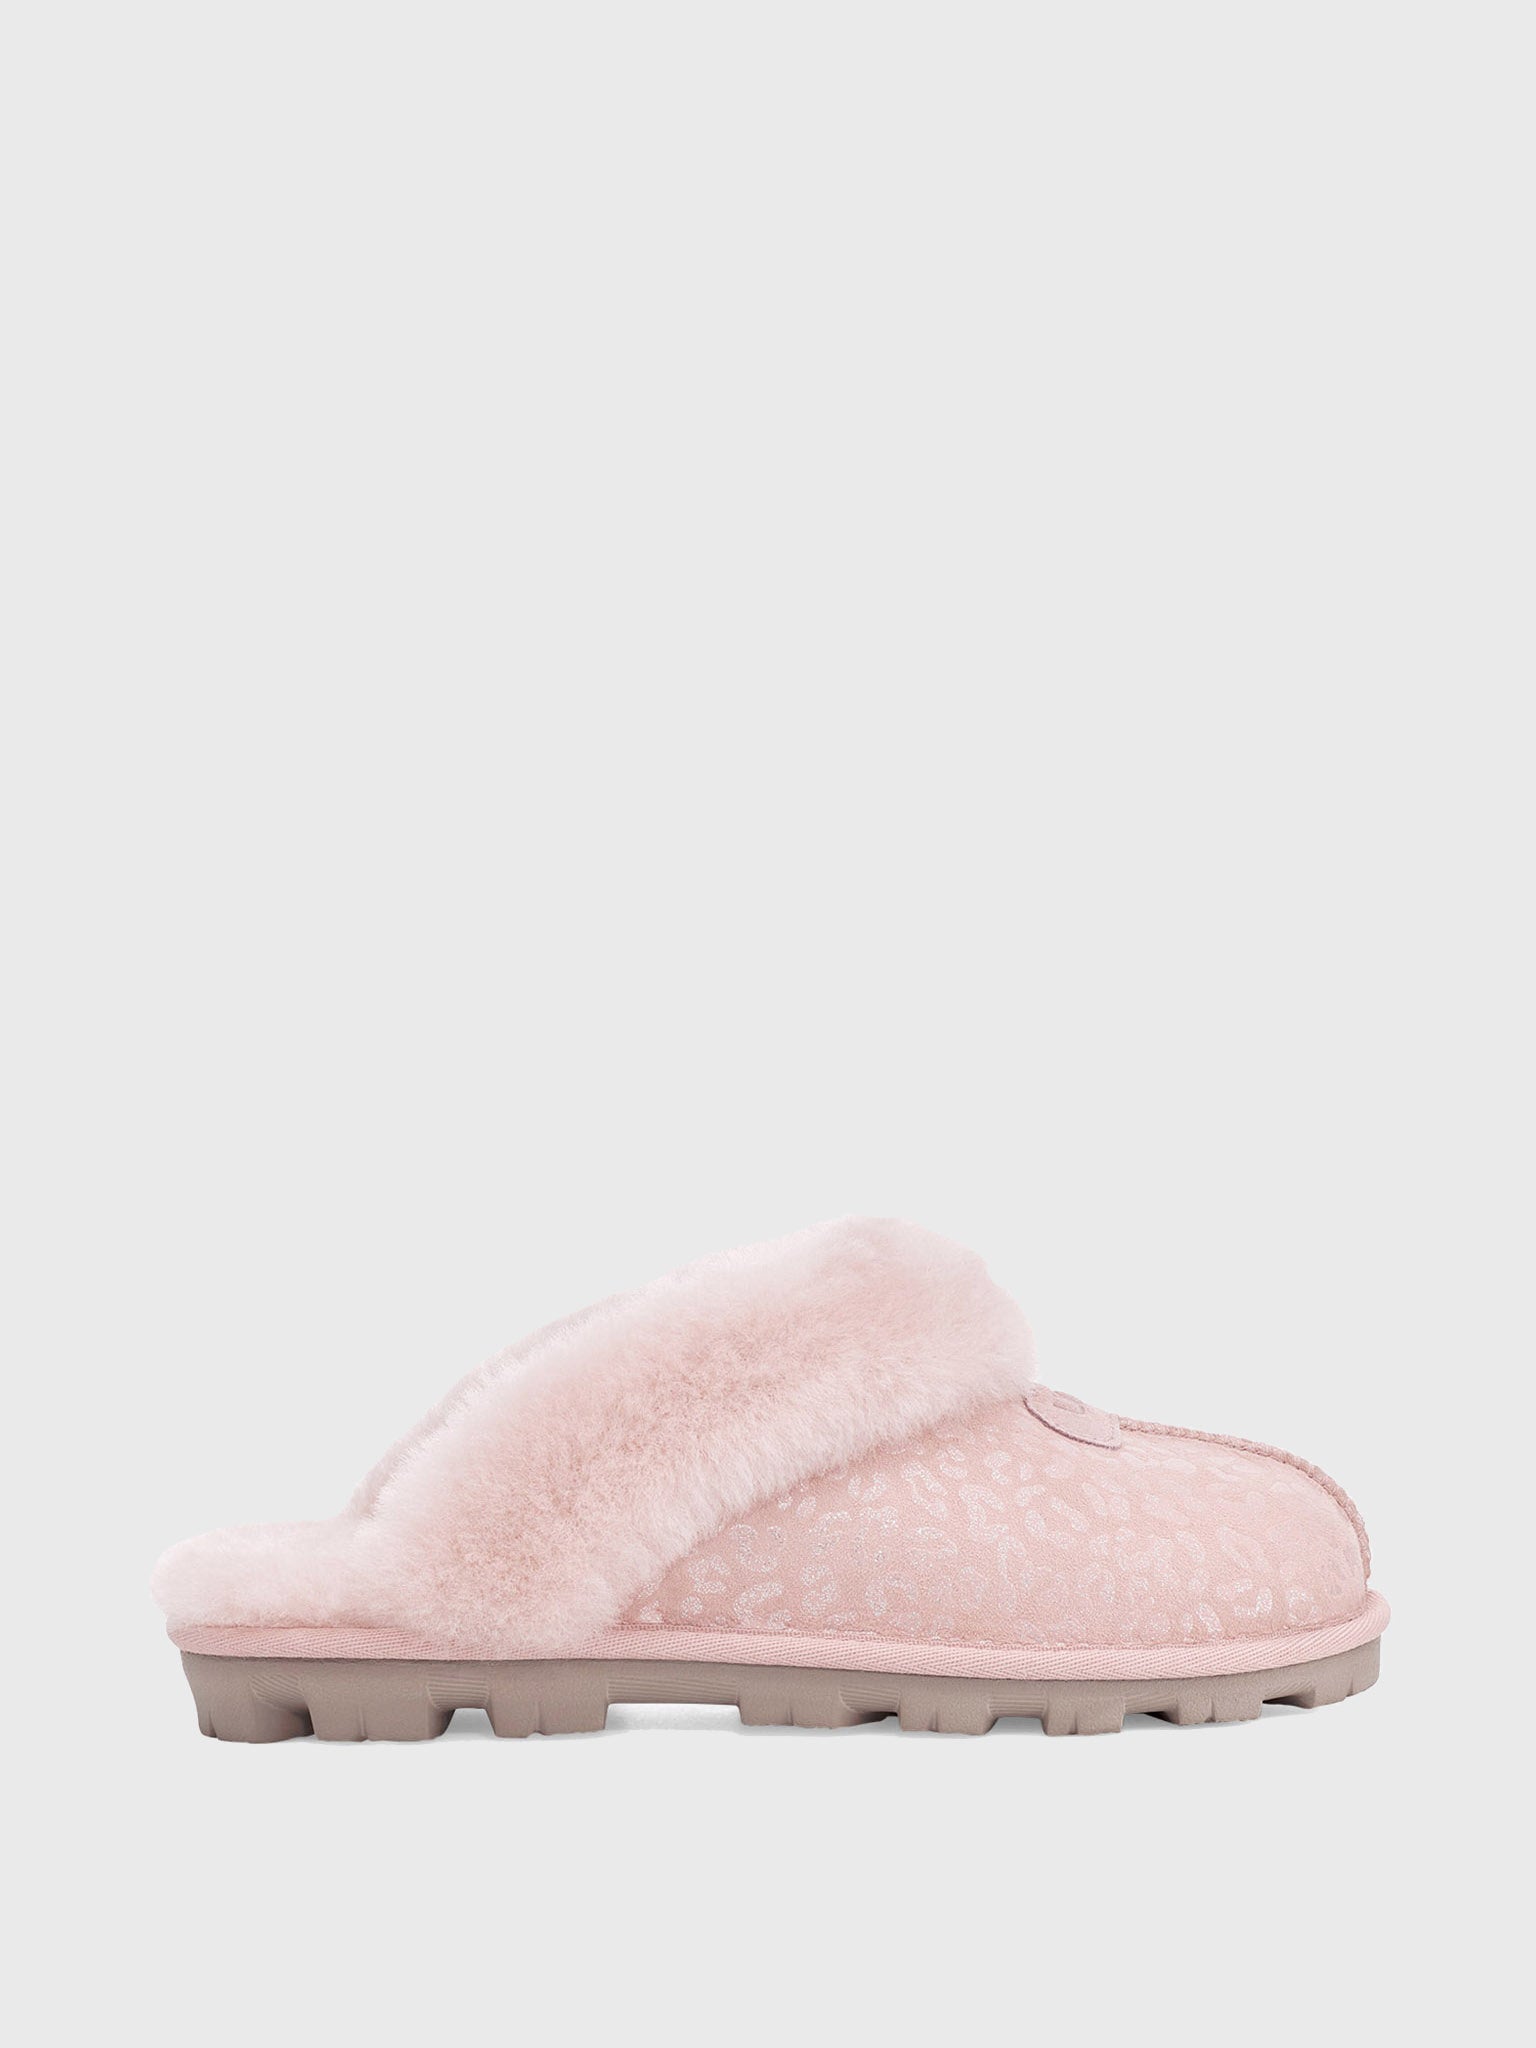 Buy > uggs women's coquette slipper > in stock